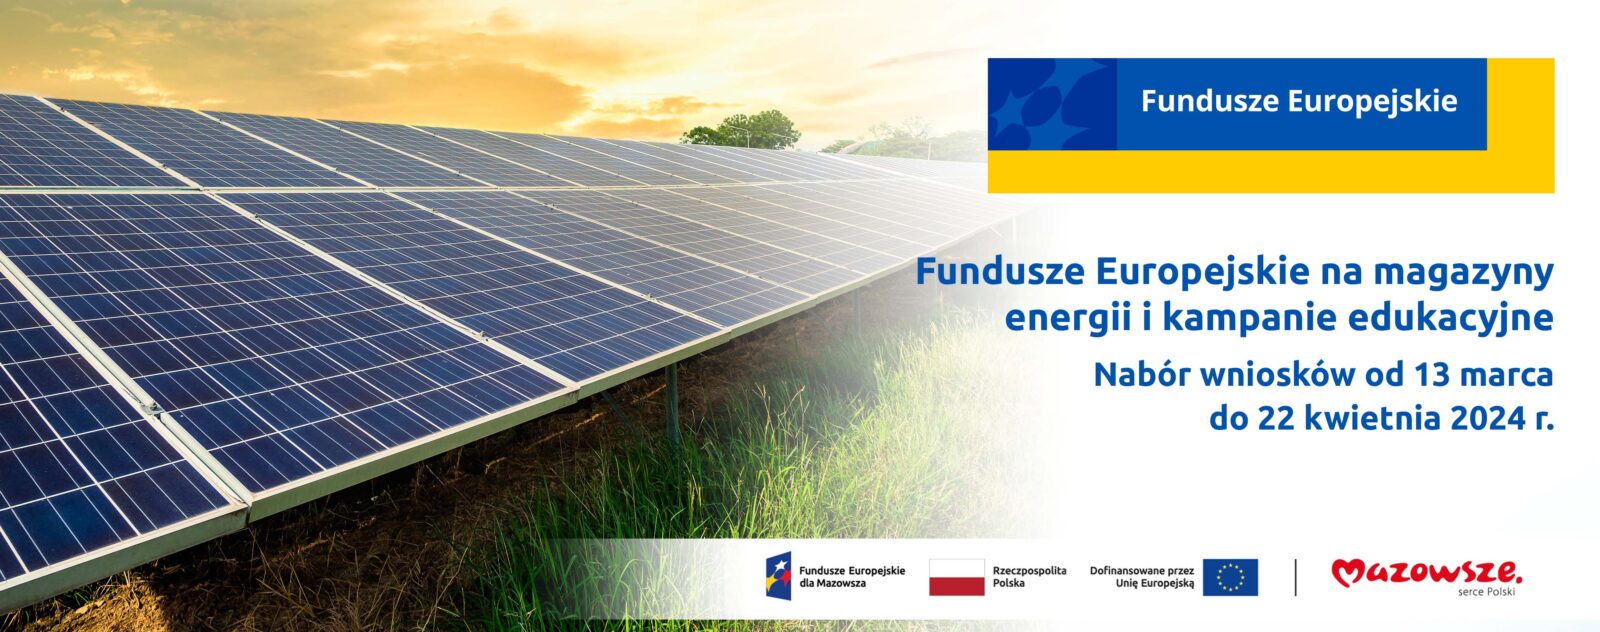 grafika przedstawia napis: Fundusze Europejskie na magazyny energii i kampanie edukacyjne. Nabór wniosków od 13 marca do 22 kwietnia 2024 r. Z lewej strony grafiki widać farmę paneli fotowoltaicznych.